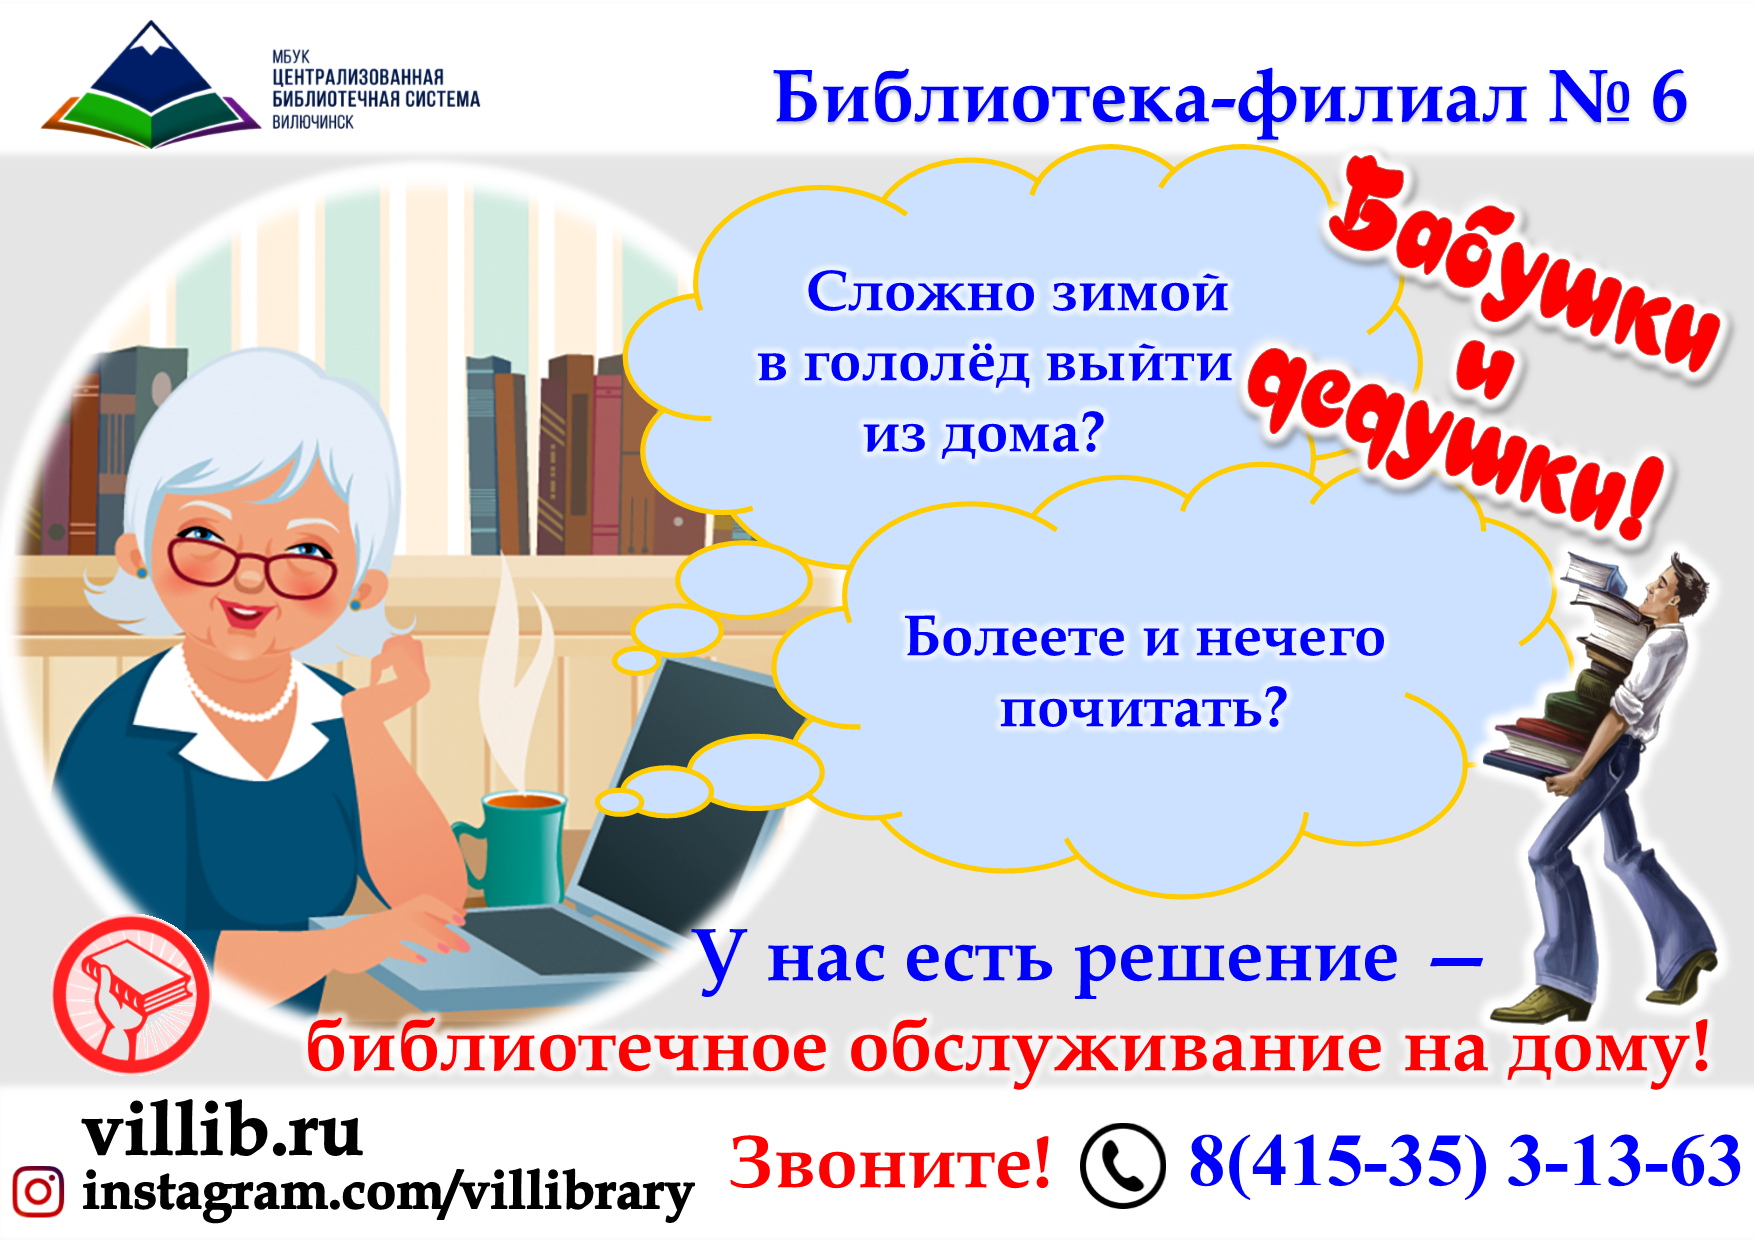 Реклама работы библиотеки. Реклама клубов в библиотеке. Работа с пожилыми людьми в библиотеке. Работа в библиотеке с пожилыми. Рабочий день библиотеки